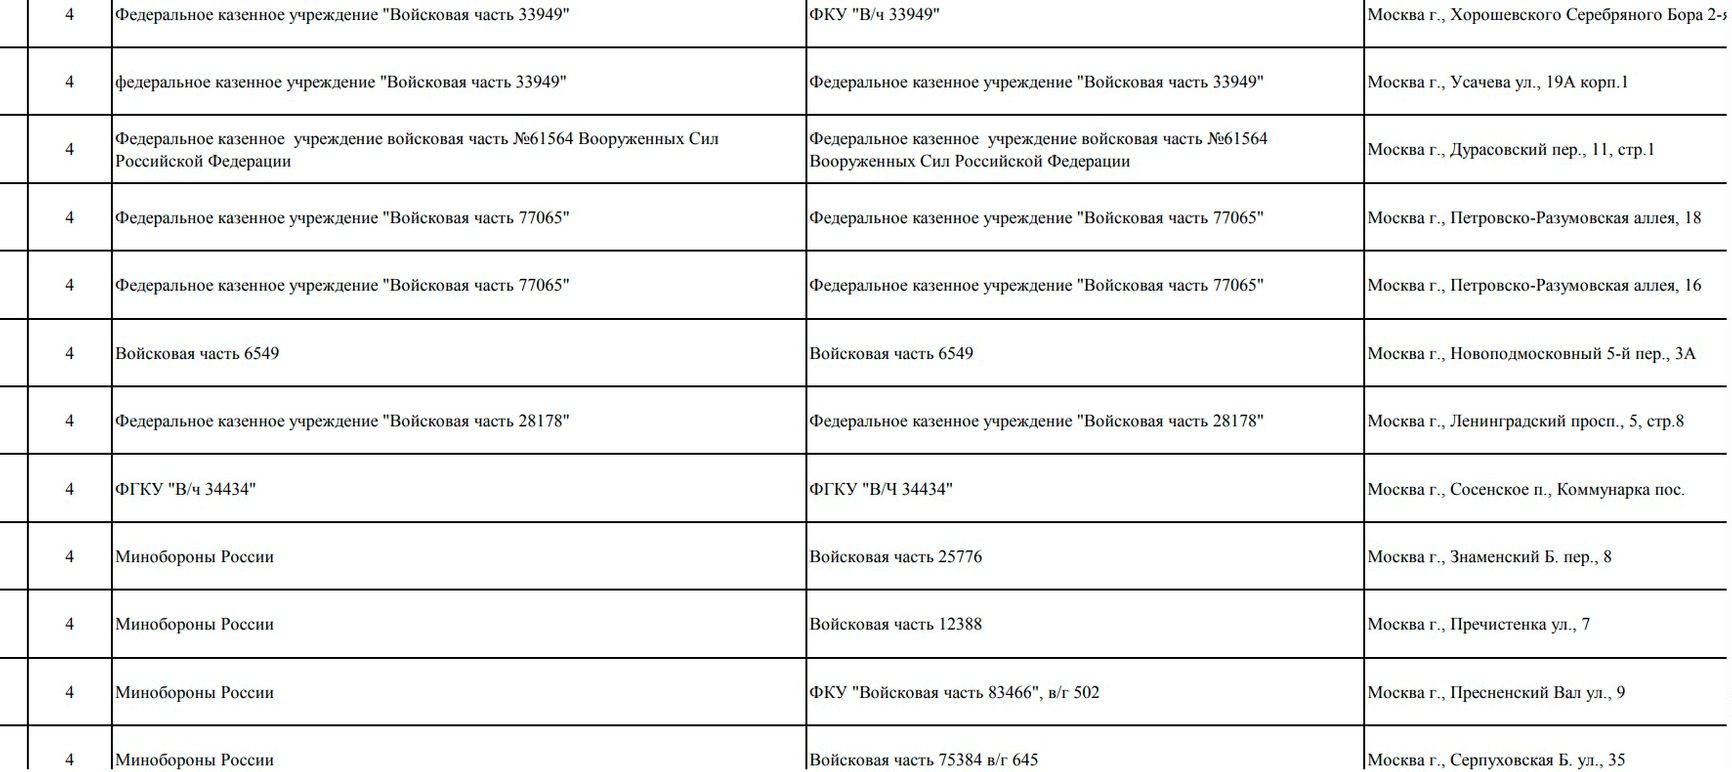 Список объектов Минобороны / Мэрия Москвы